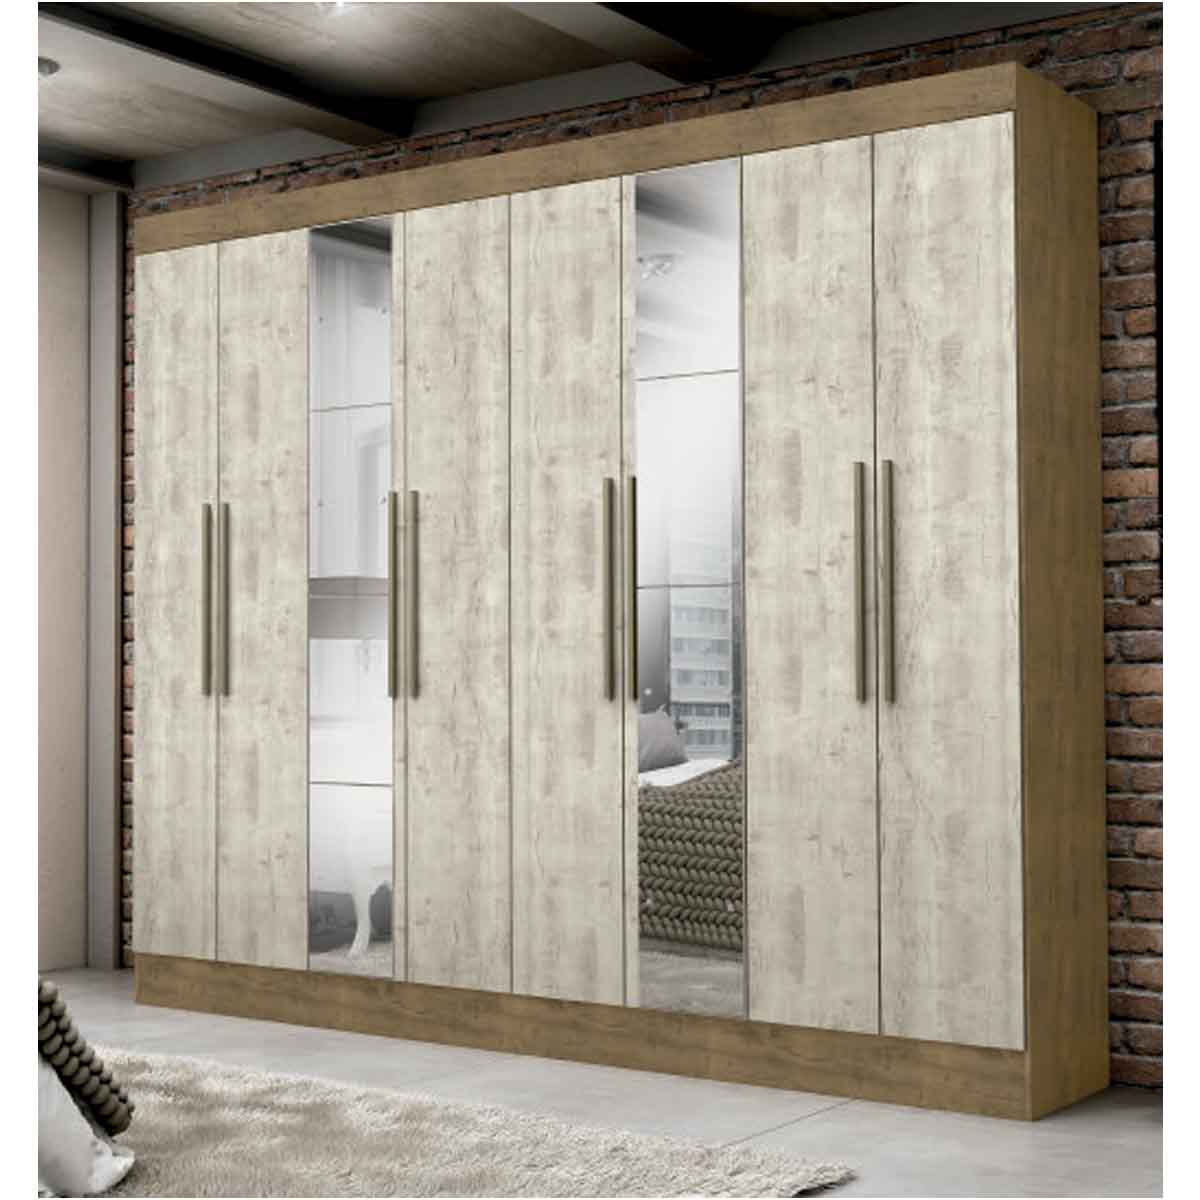 Ropero Closet Moderno con Espejo 3 Puertas  2 Cajones Internos Rieles Metálicos Color IPE / Vainilla